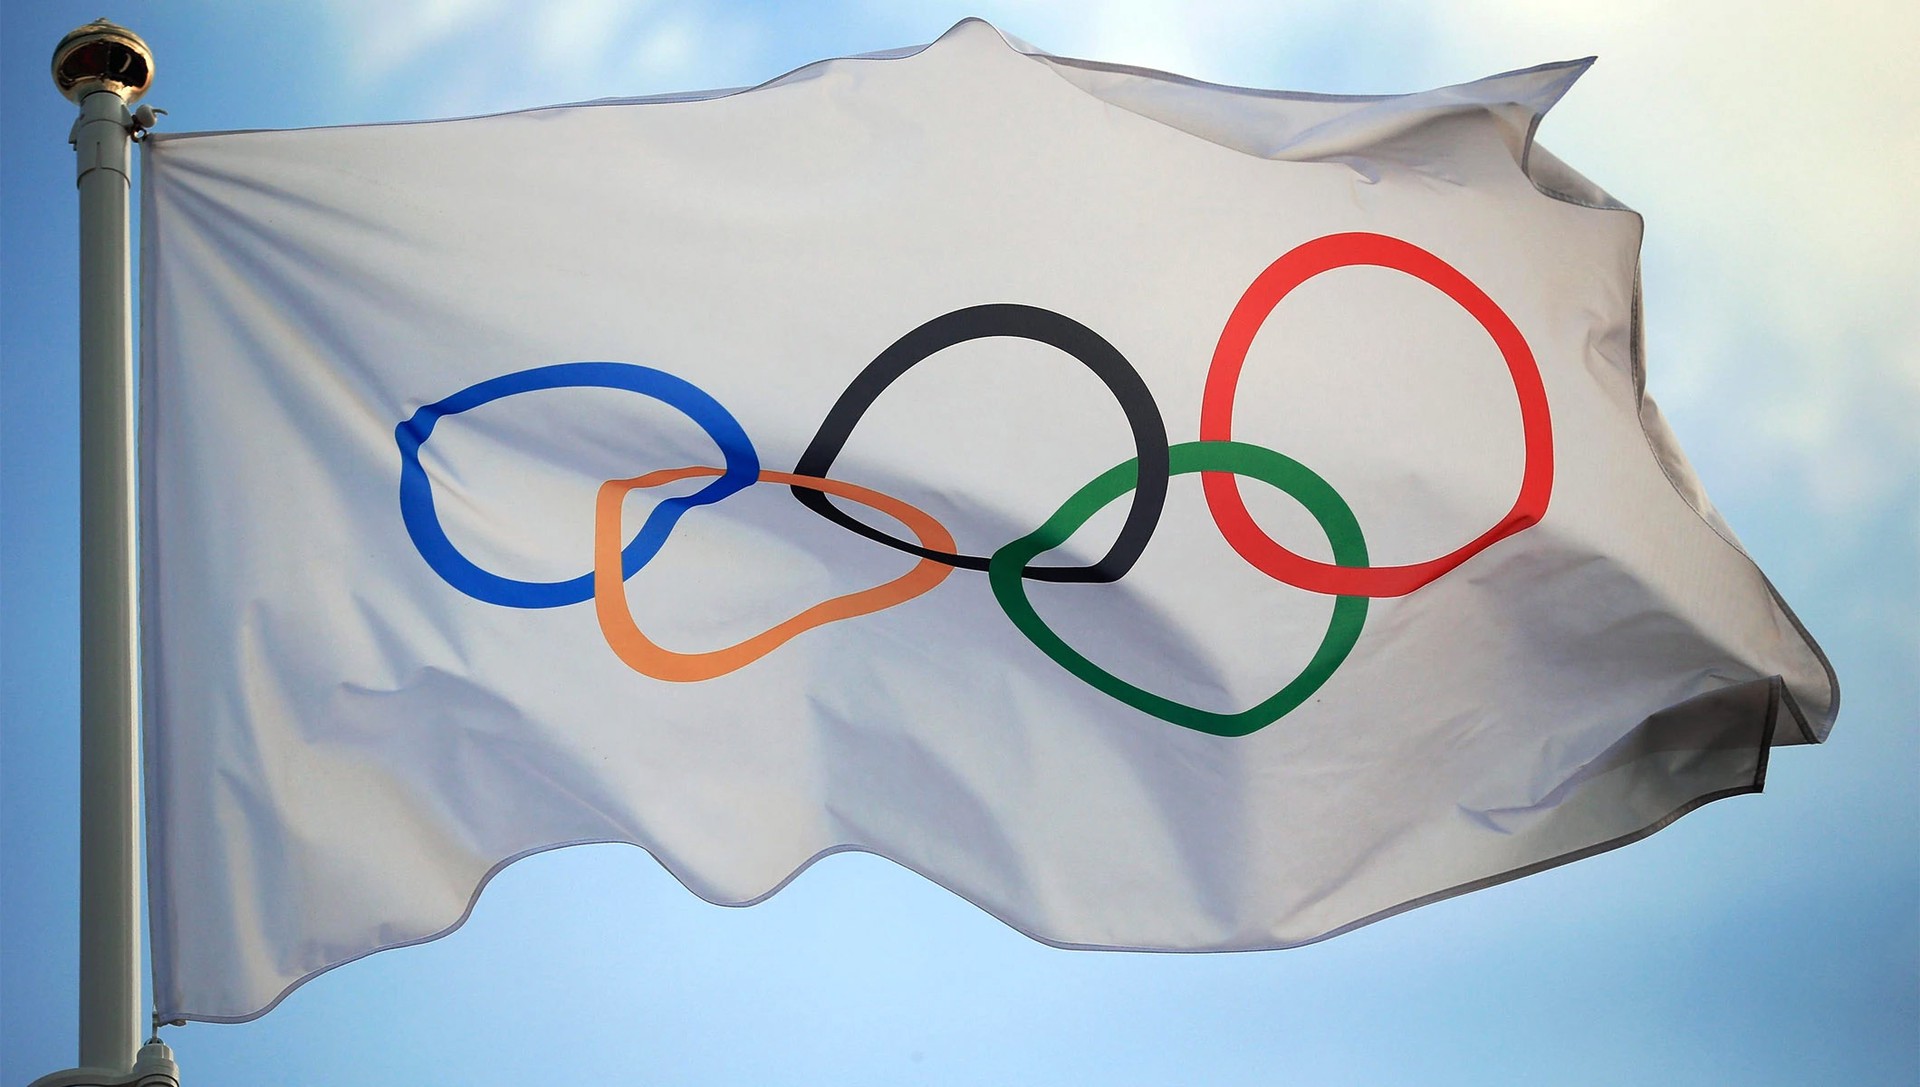 Нагорный: Моё мнение о том, что Олимпиада должна быть мечтой каждого спортсмена, не изменилось